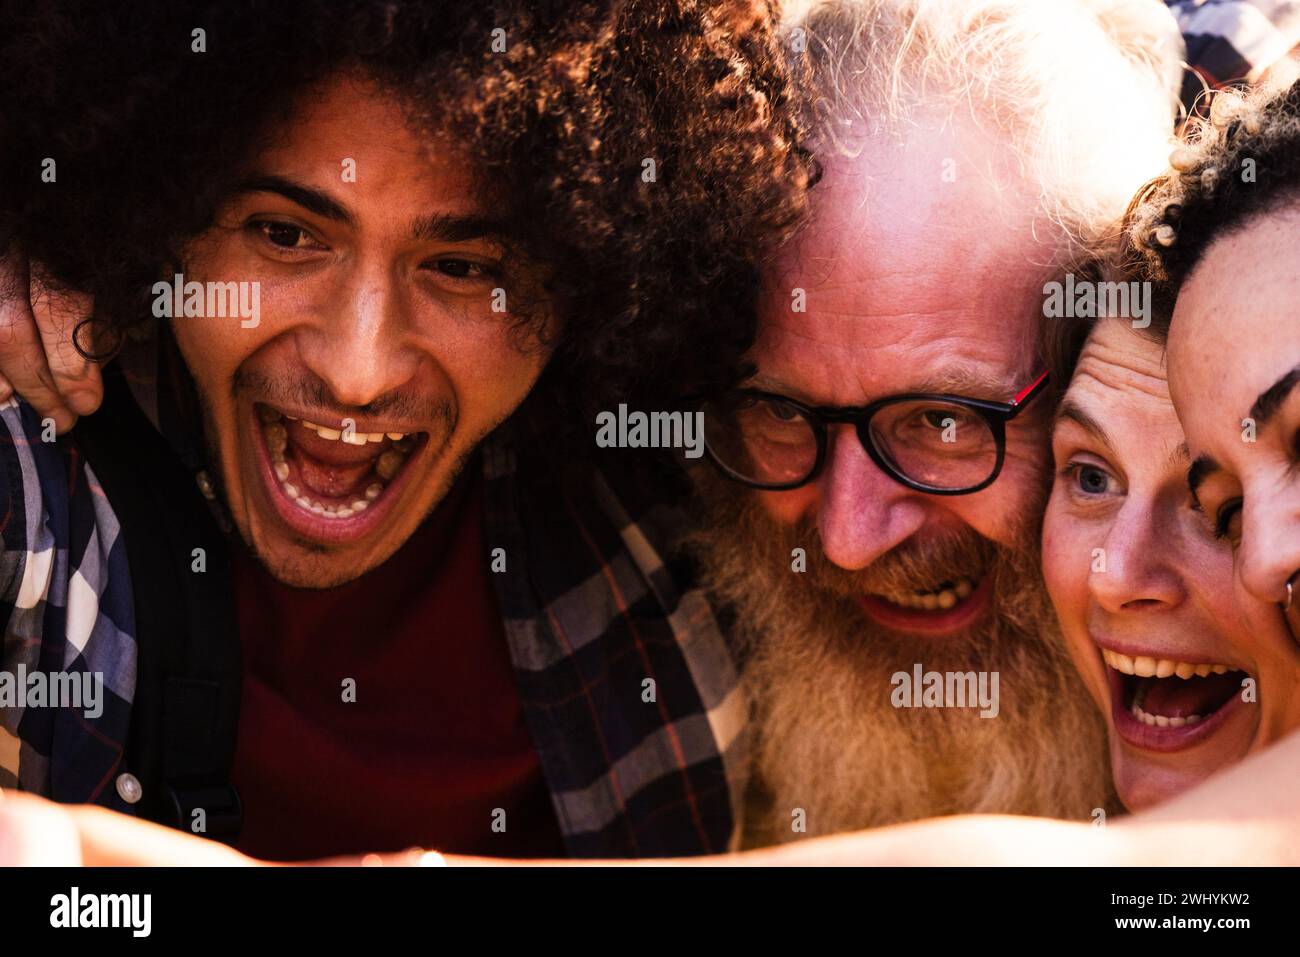 Playful Melting Pot Diverse Friends Share a Joyful Selfie Moment Stock Photo